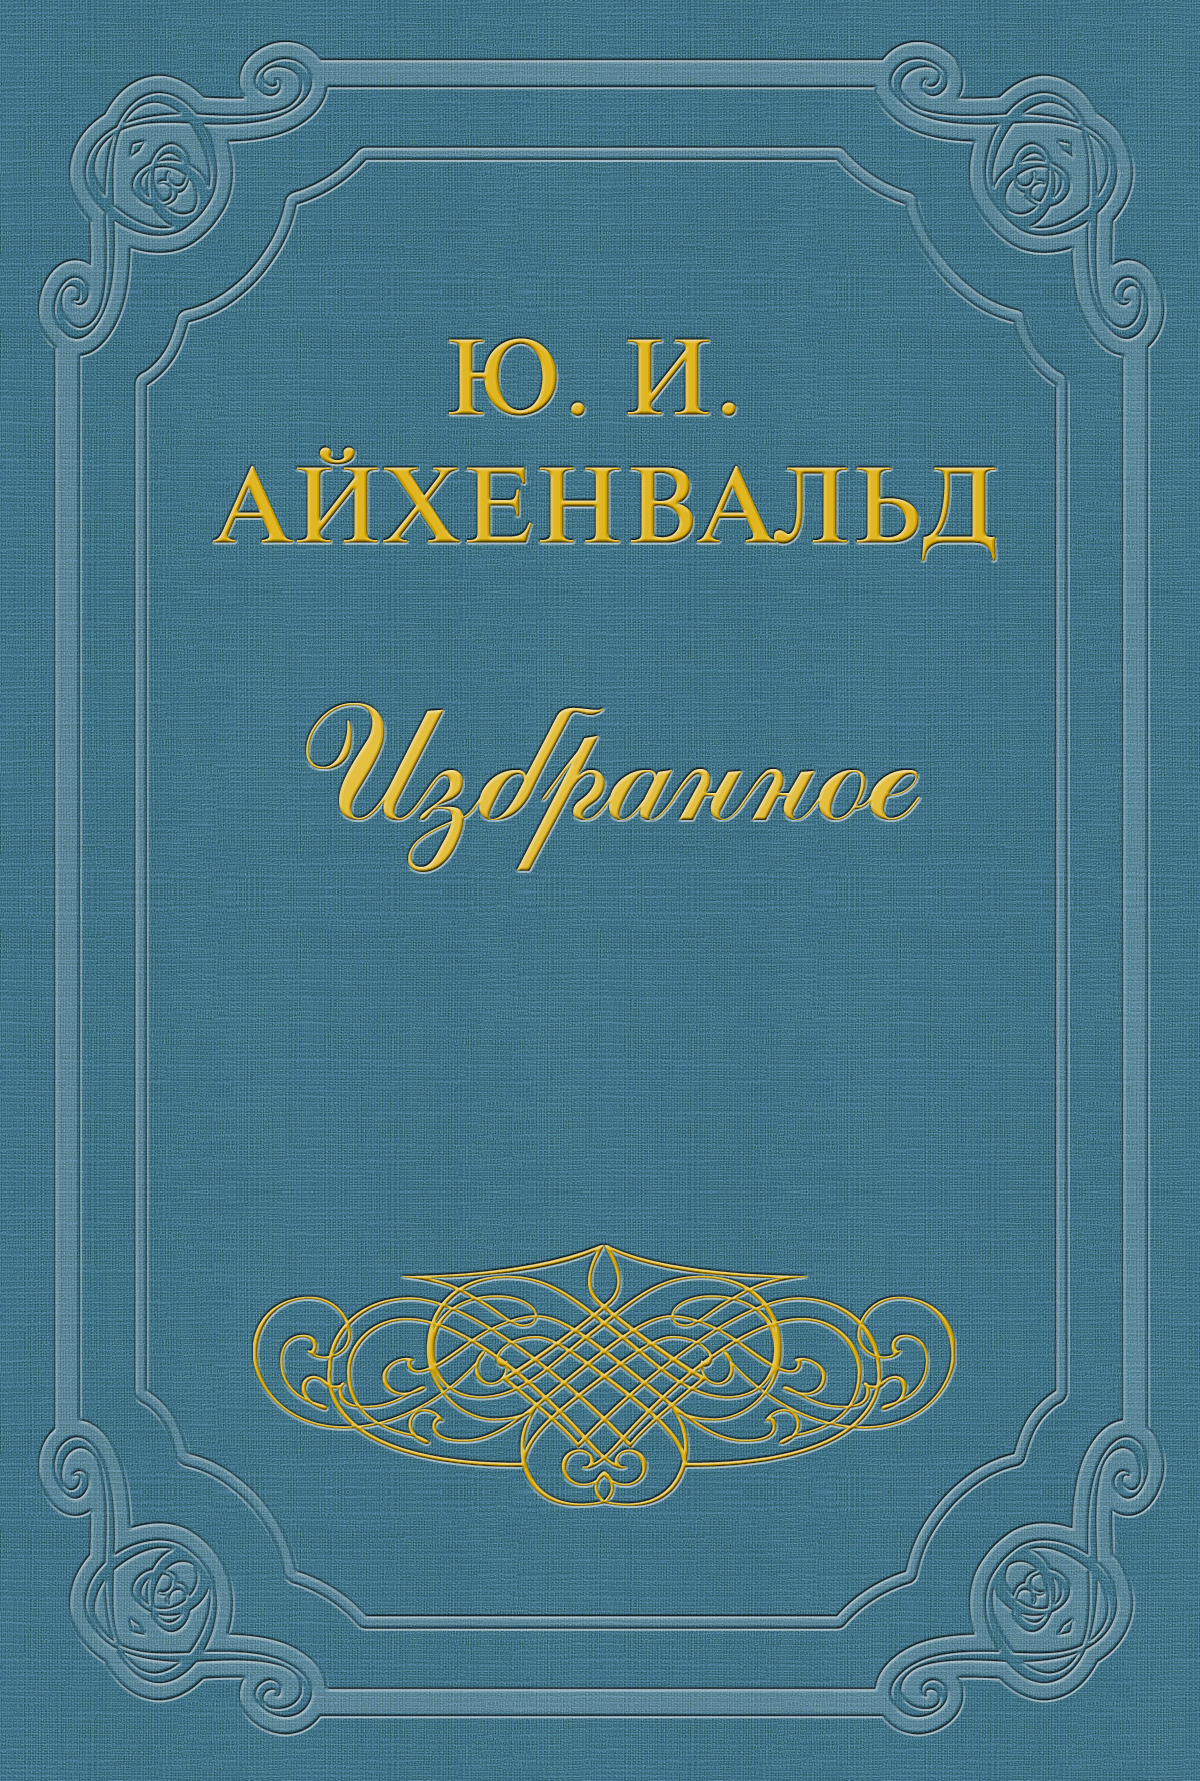 Книга Огарев из серии , созданная Юлий Айхенвальд, может относится к жанру Критика. Стоимость книги Огарев  с идентификатором 2610415 составляет 5.99 руб.